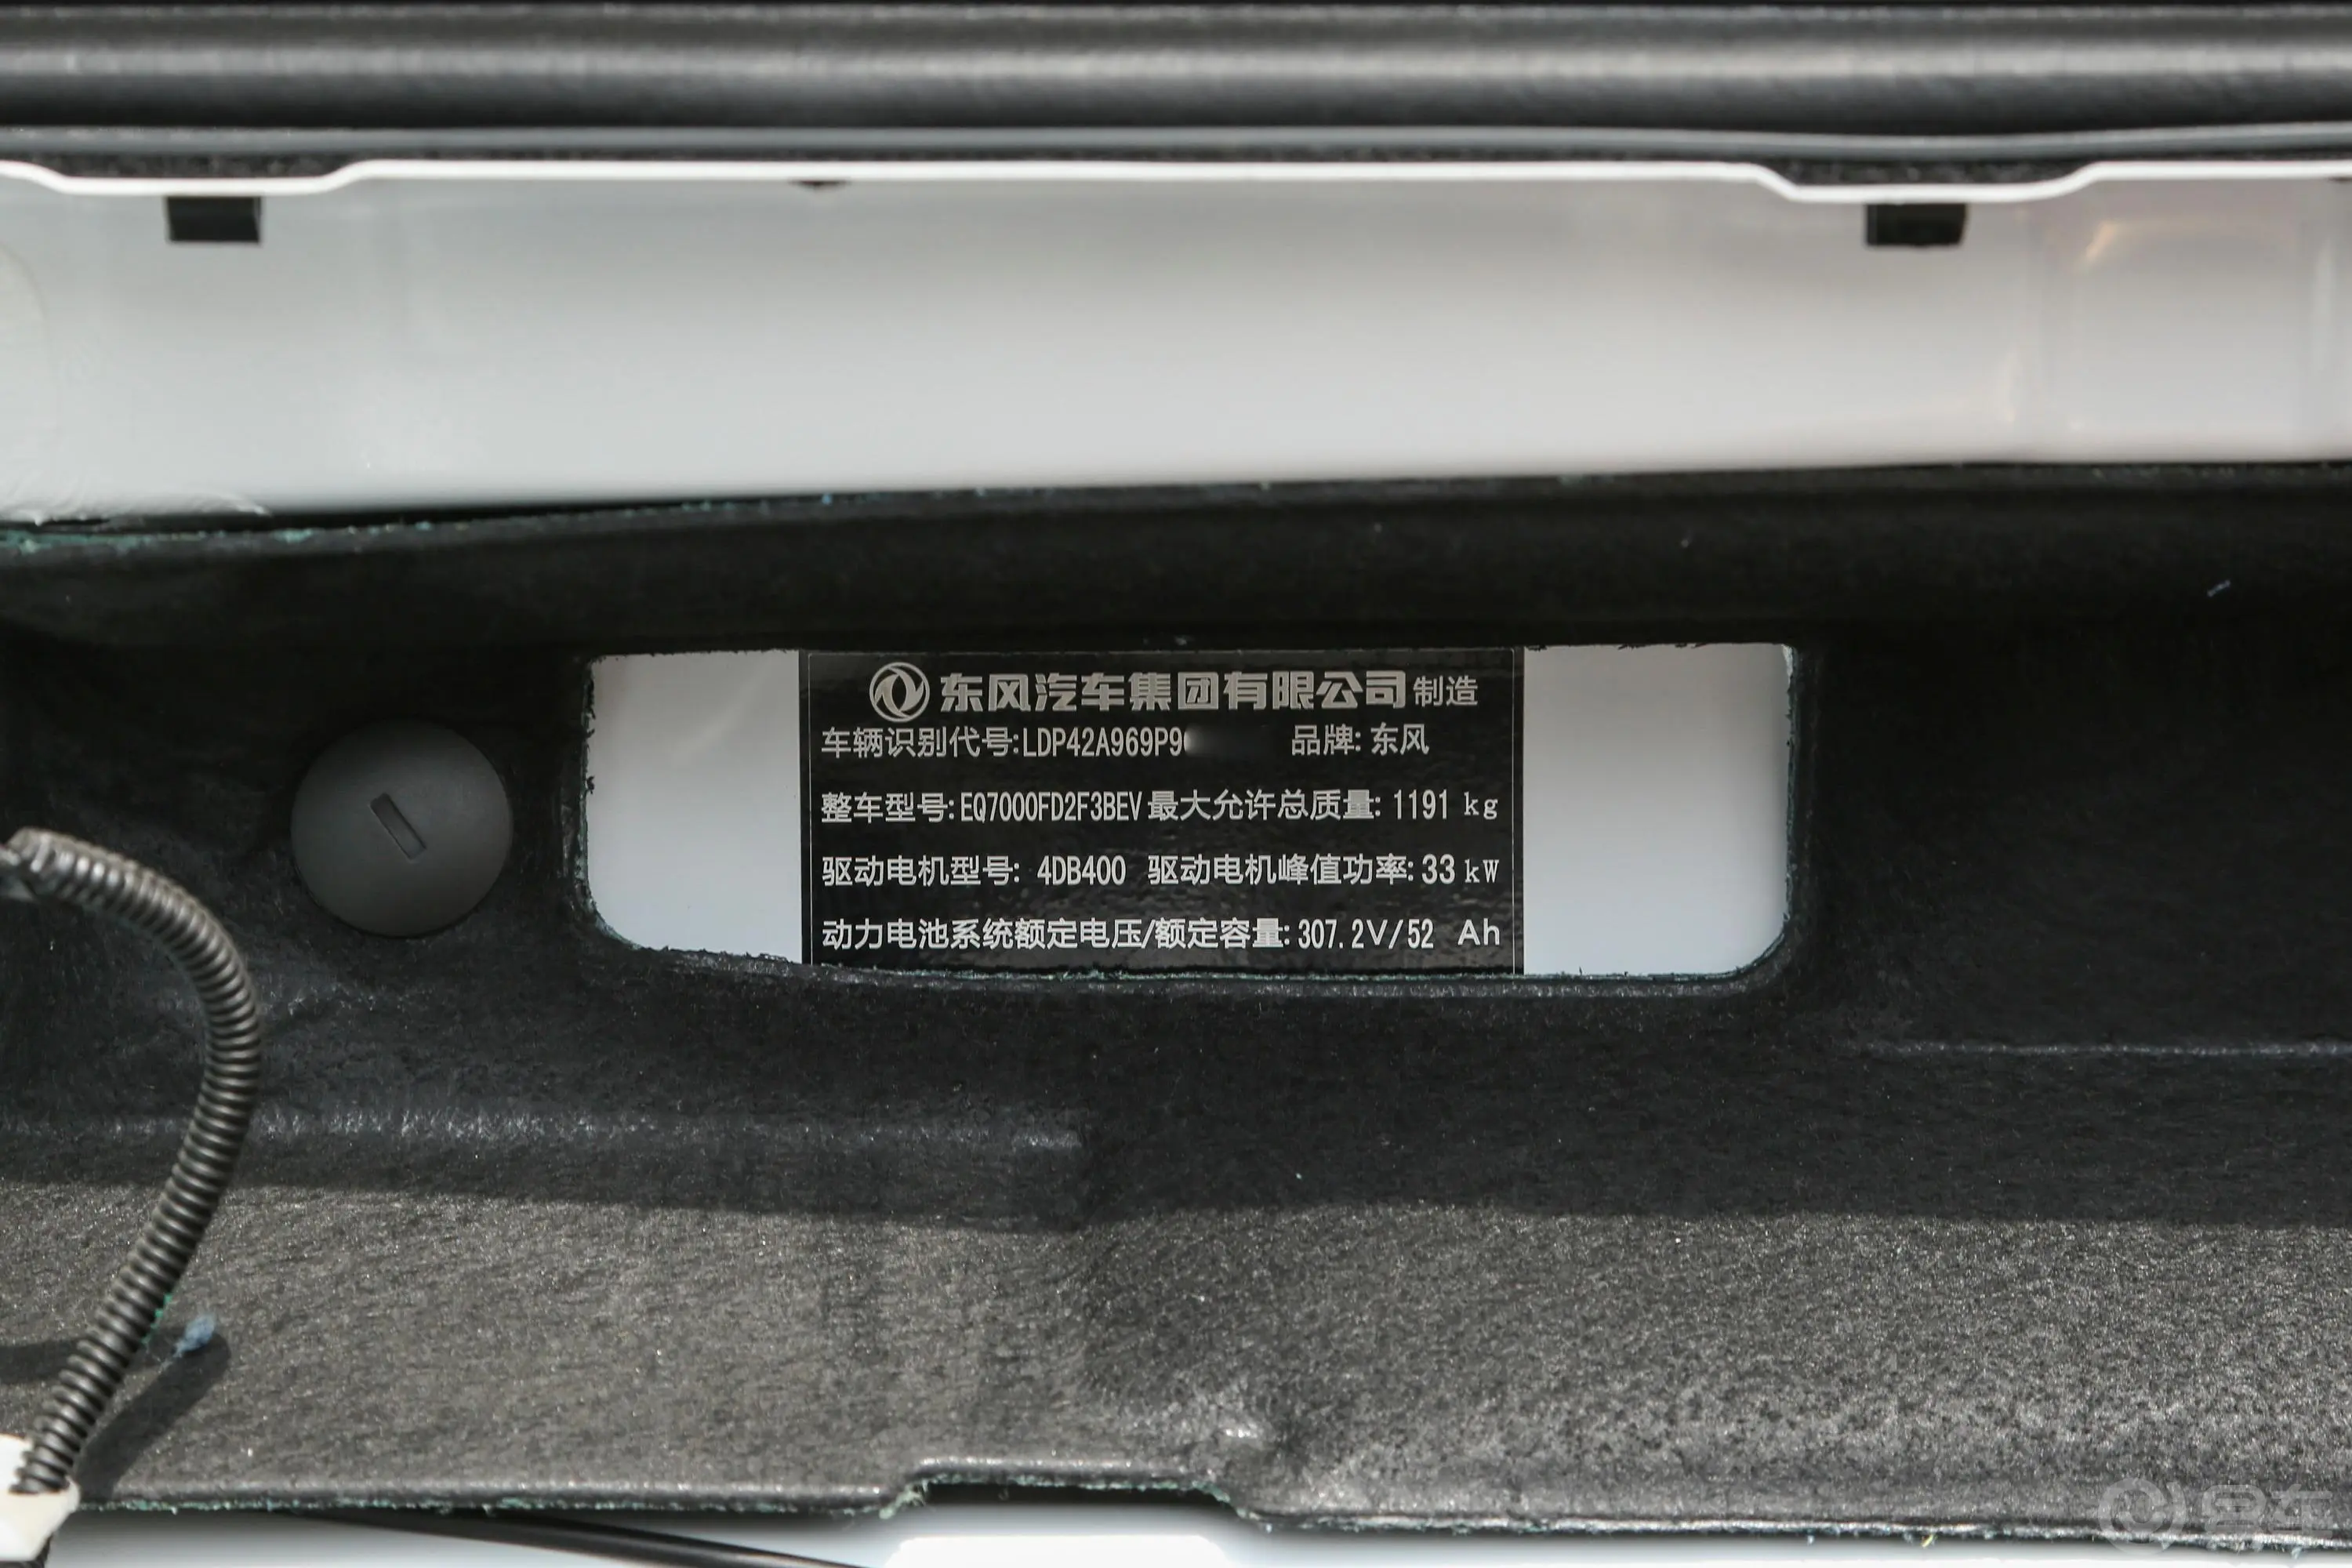 东风纳米EX1PRO 轻风版 201km 闪电型车辆信息铭牌